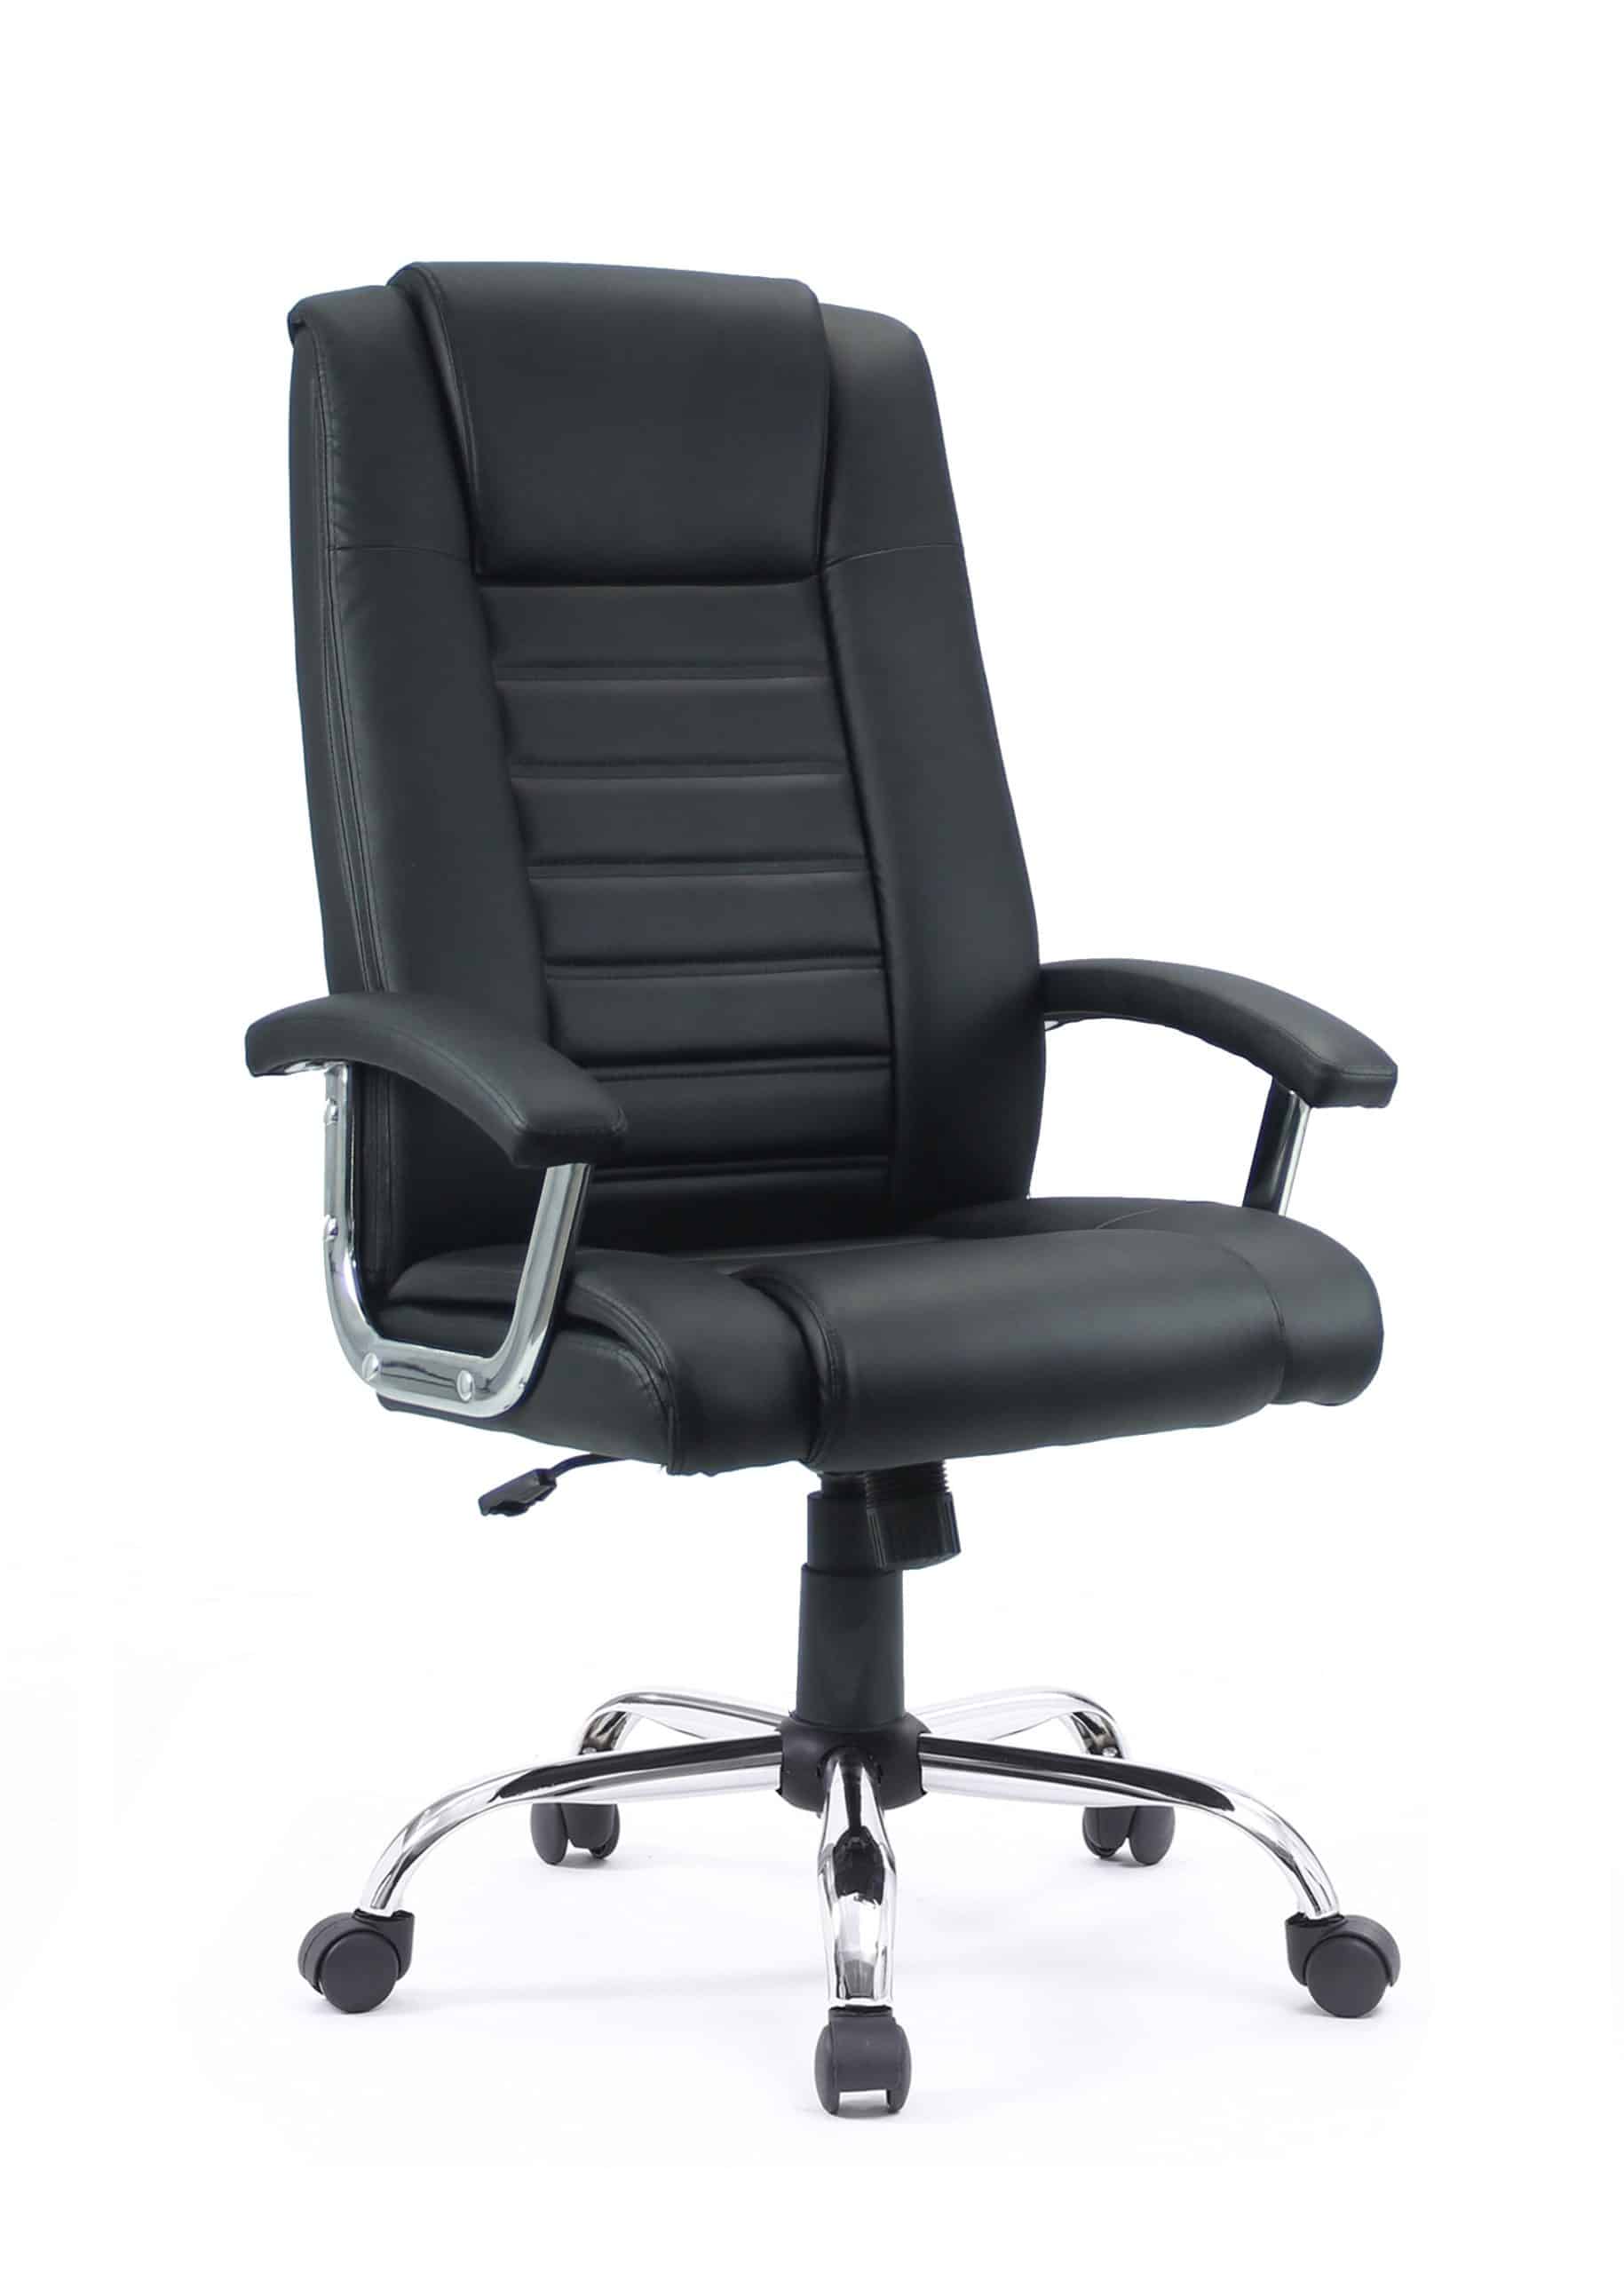 Cadeira de Escritório Presidente Ergonômica PU Duoffice Carrara DU501 –  Duoffice Brasil